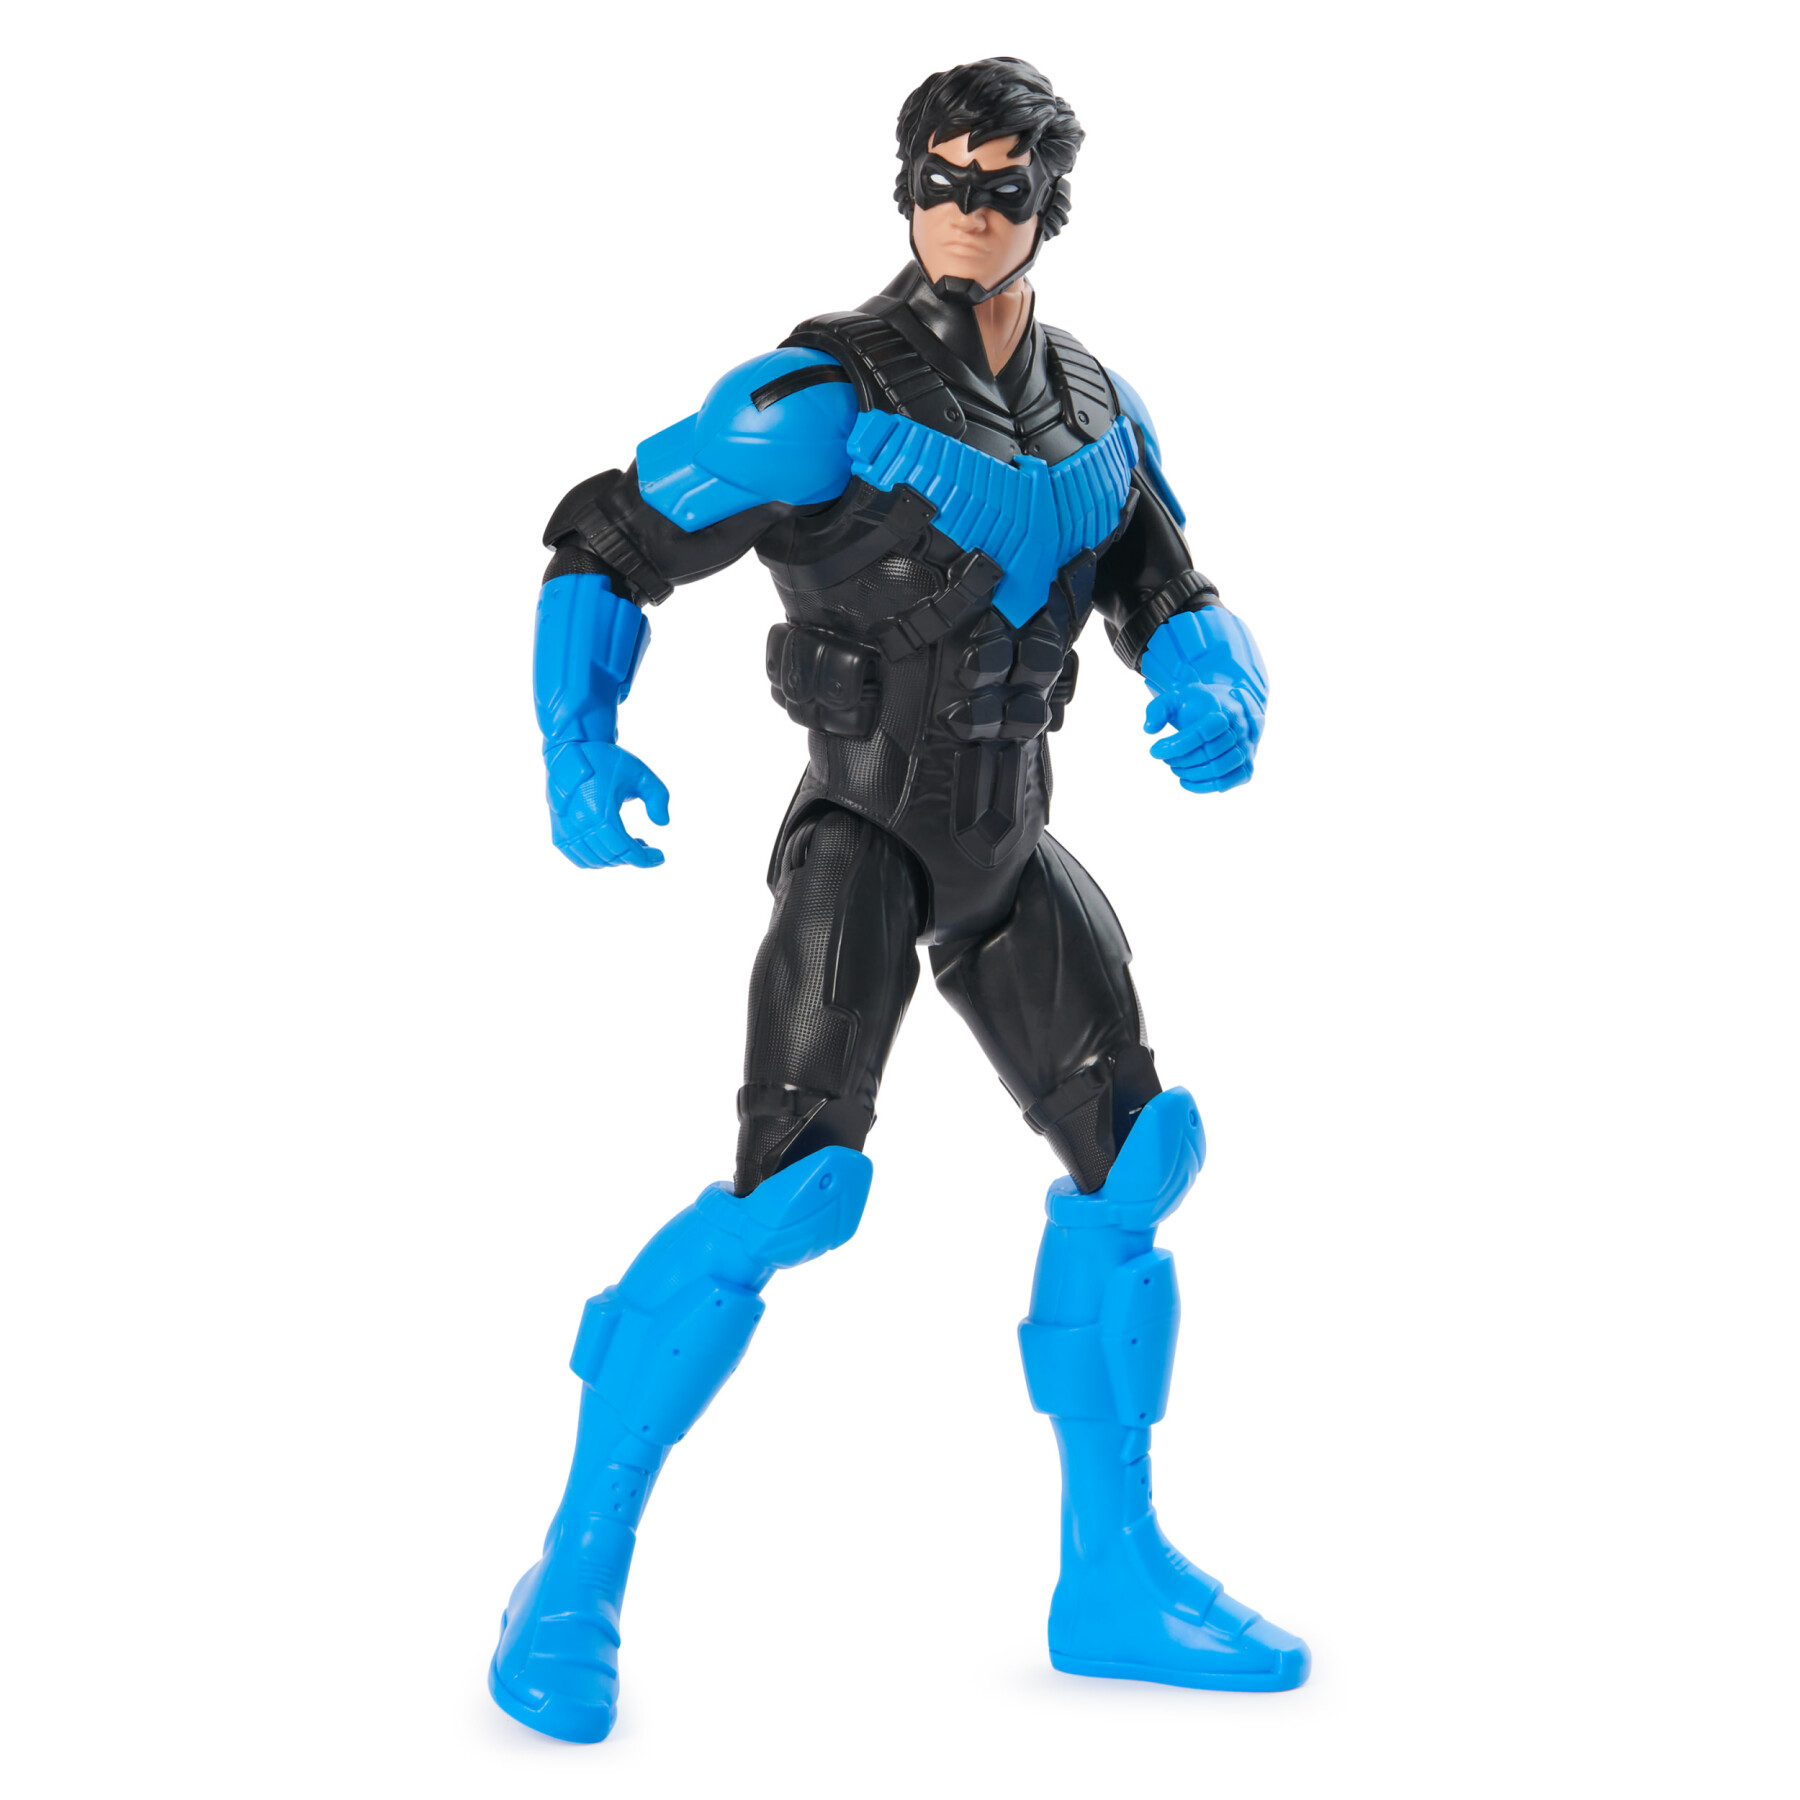 Dc comics, action figure nightwing armatura, supereroe giocattolo in scala, personaggio mondo batman alto 30 cm, supereroe con 11 punti di articolazione, giochi per bambini e bambine, 3+ anni - BATMAN